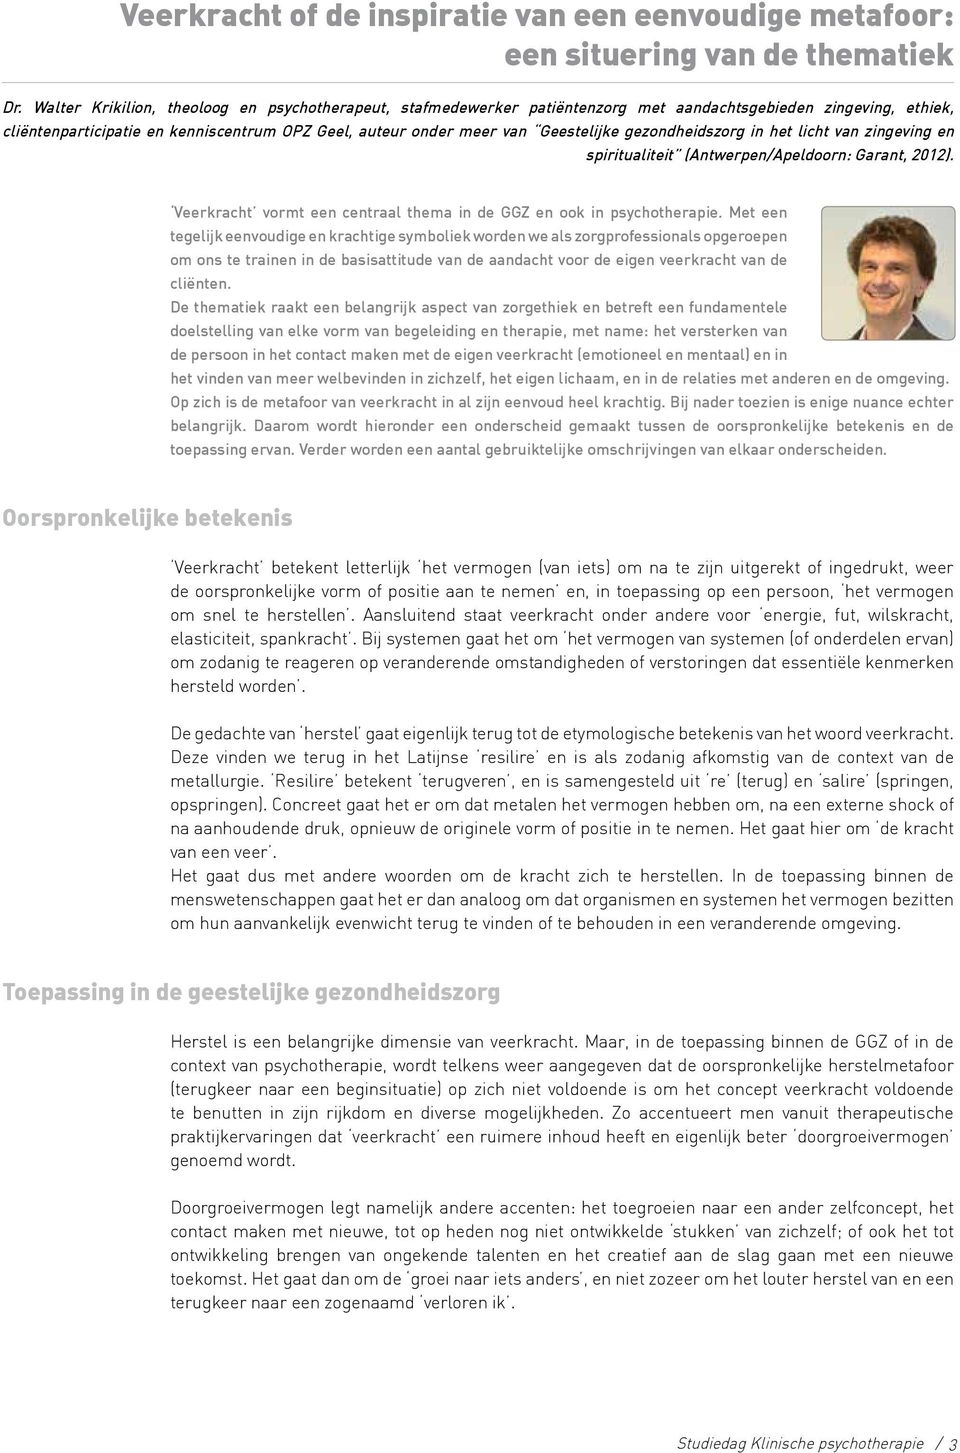 gezondheidszorg in het licht van zingeving en spiritualiteit (Antwerpen/Apeldoorn: Garant, 2012). Veerkracht vormt een centraal thema in de GGZ en ook in psychotherapie.